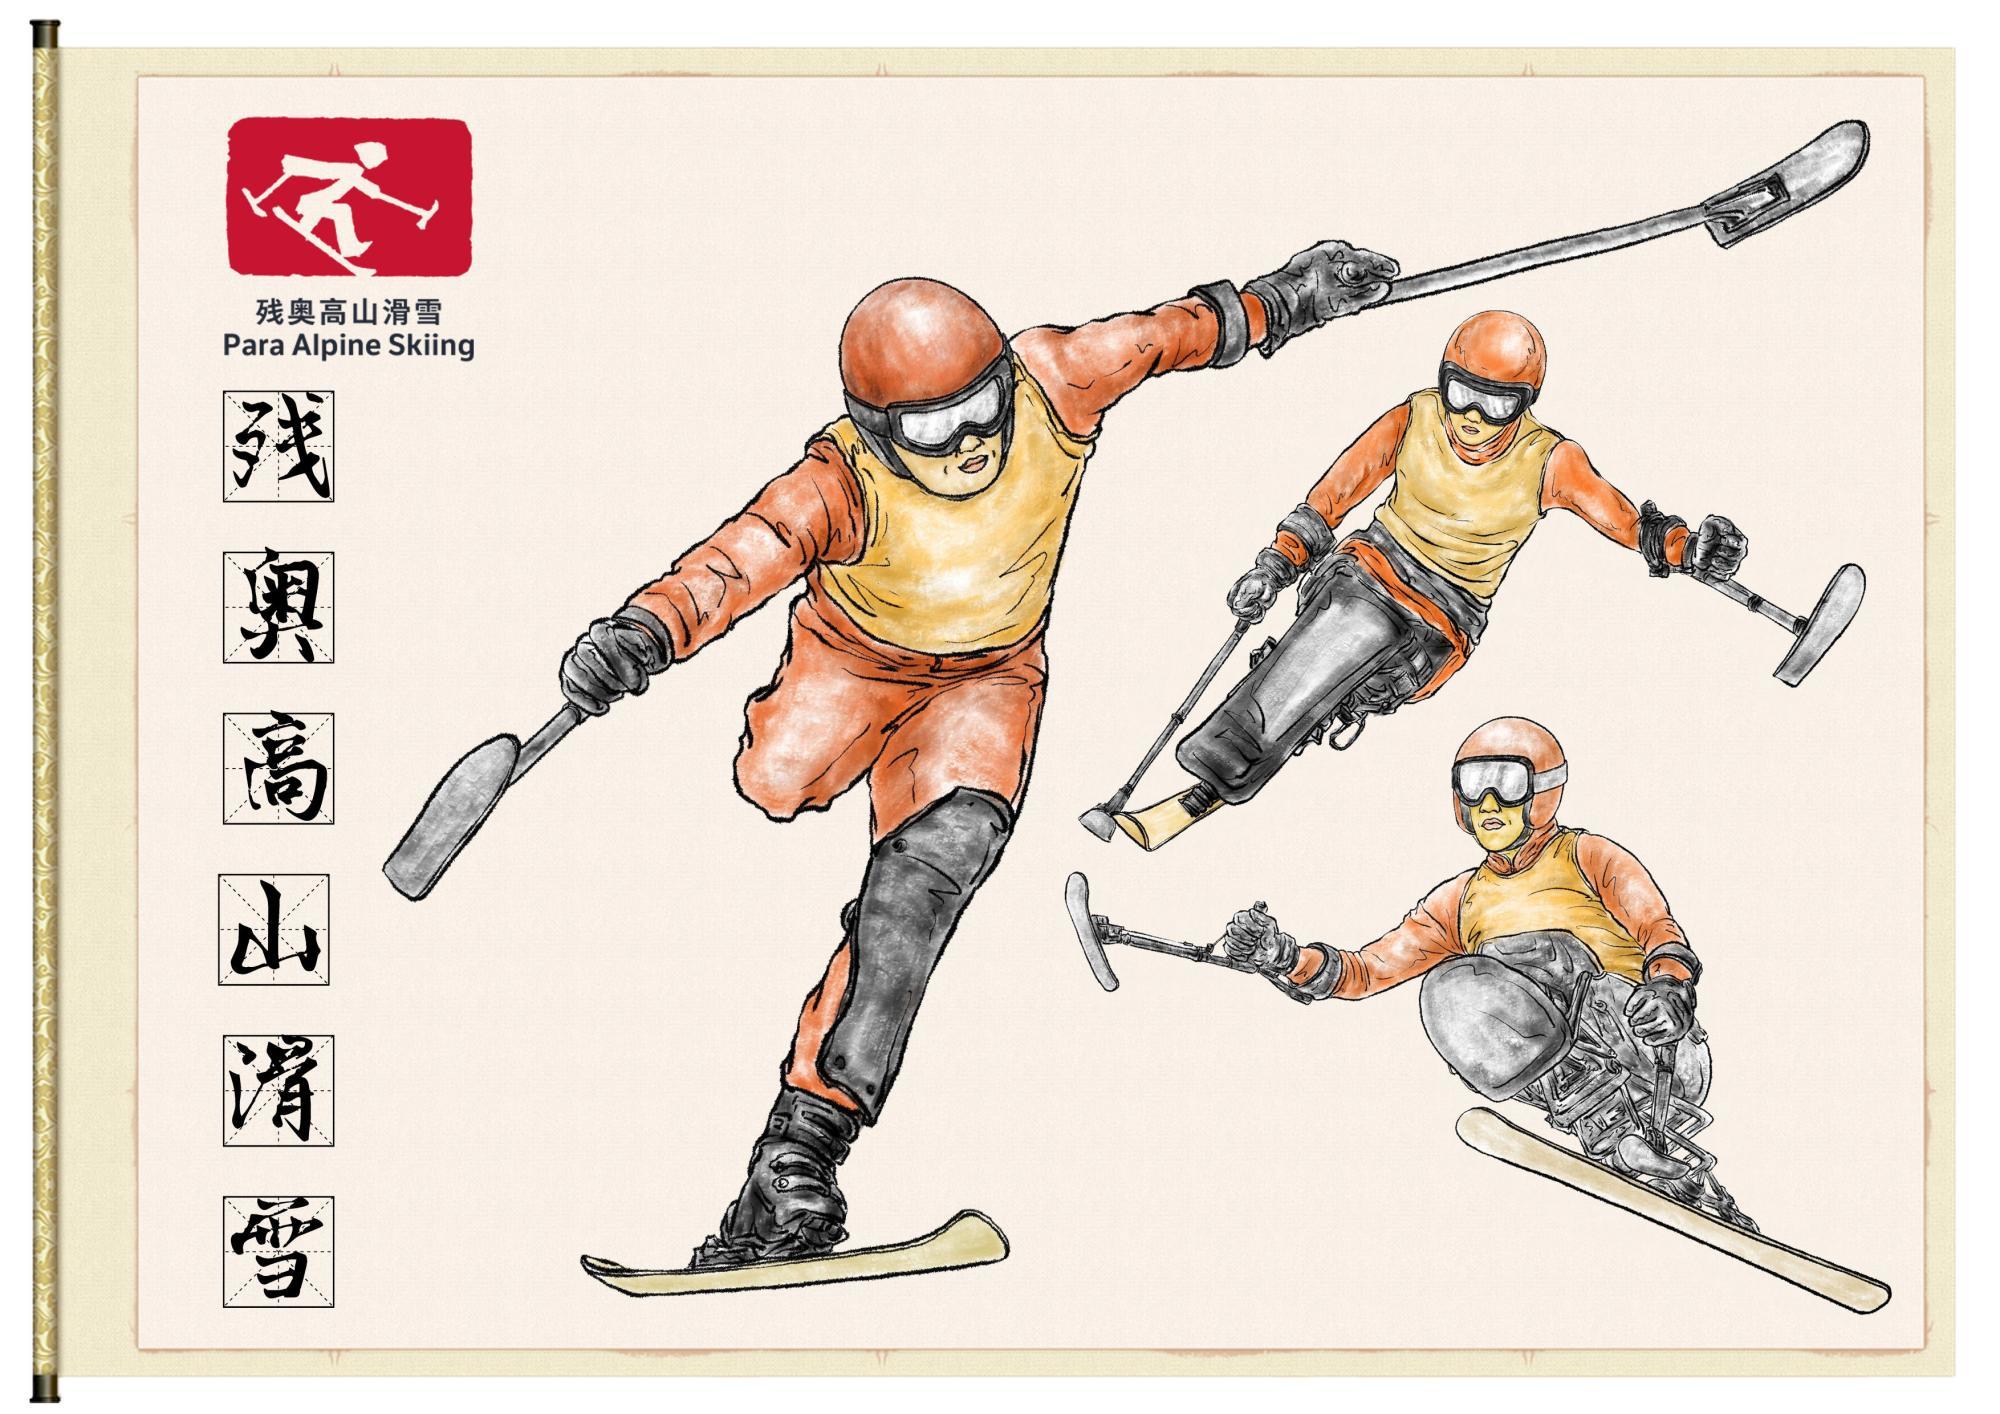 点击下方卷轴,一起看看北京2022年冬残奥会都有哪些项目,让我们一起为